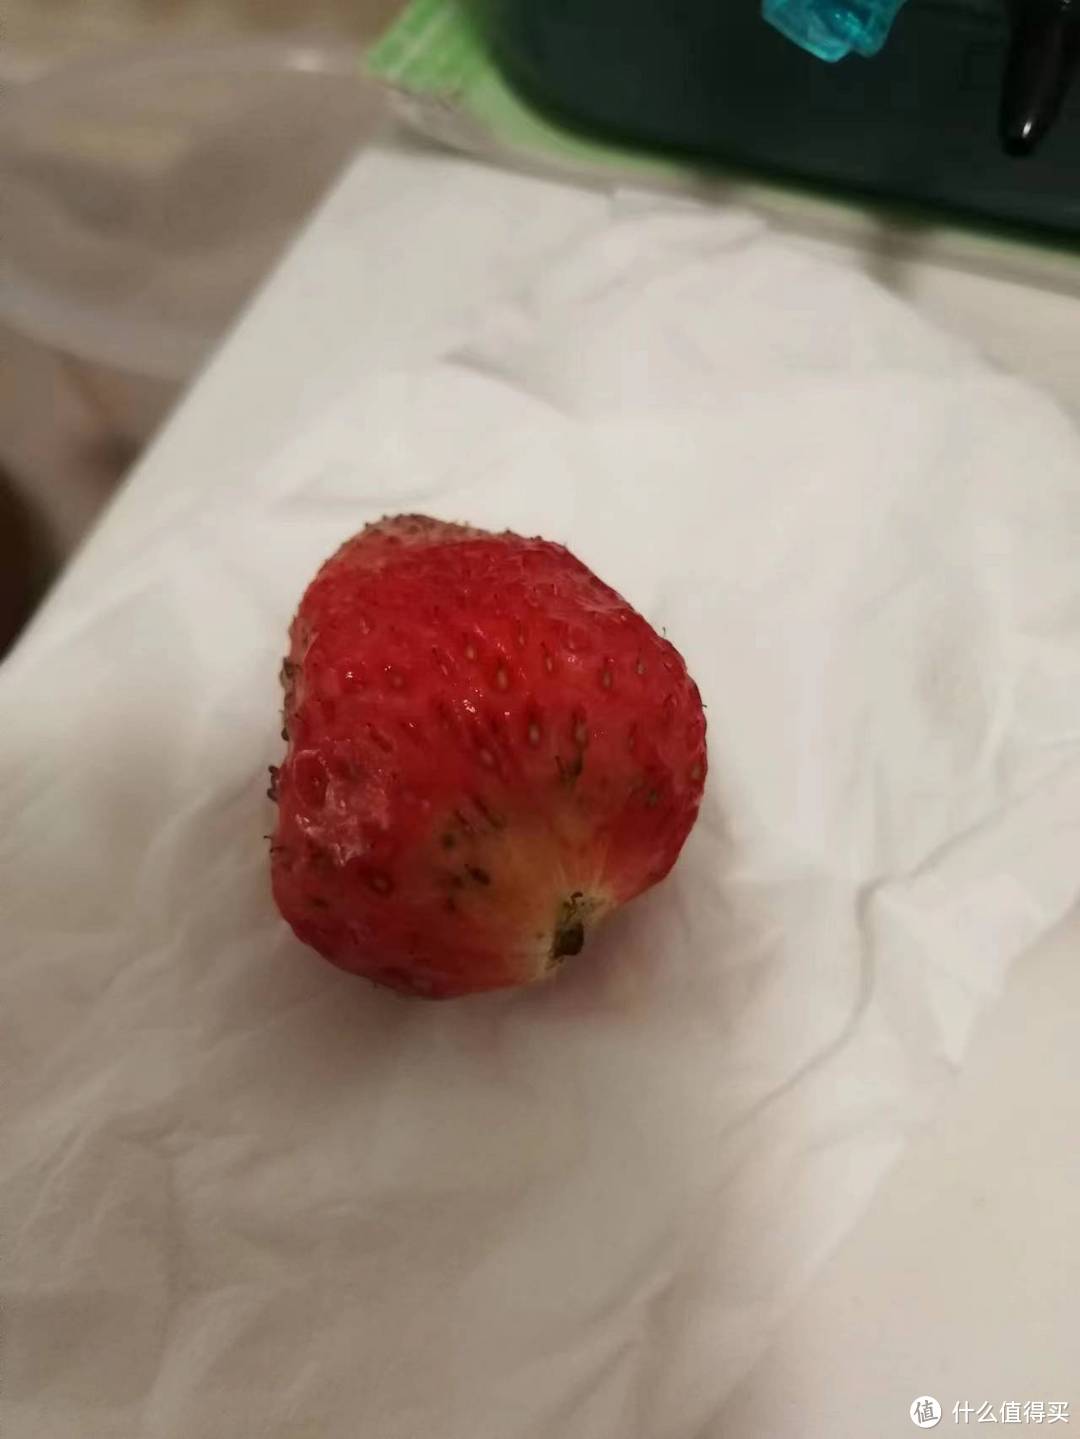 这是一个有点坏的草莓了，取了一小片果肉和种子